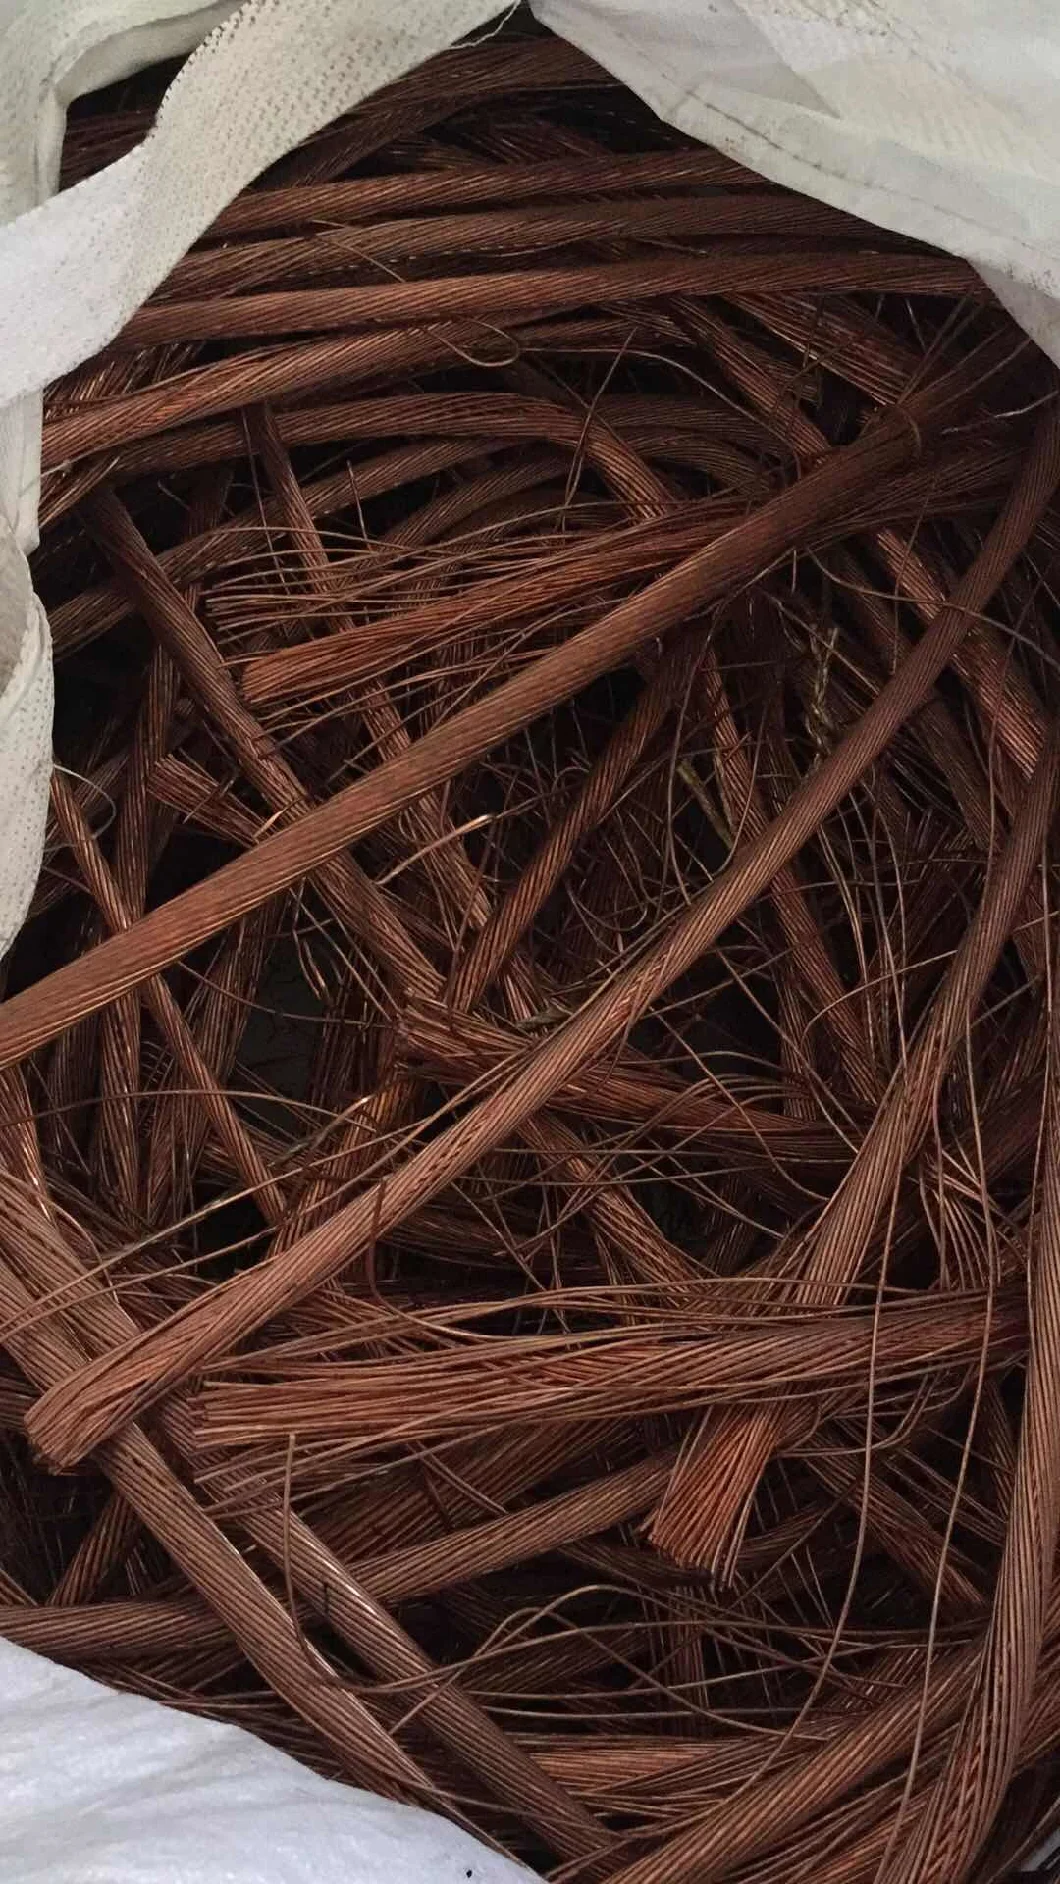 Pure Mill-Berry Copper Copper Scraps Copper Wire Scrap Manufacture